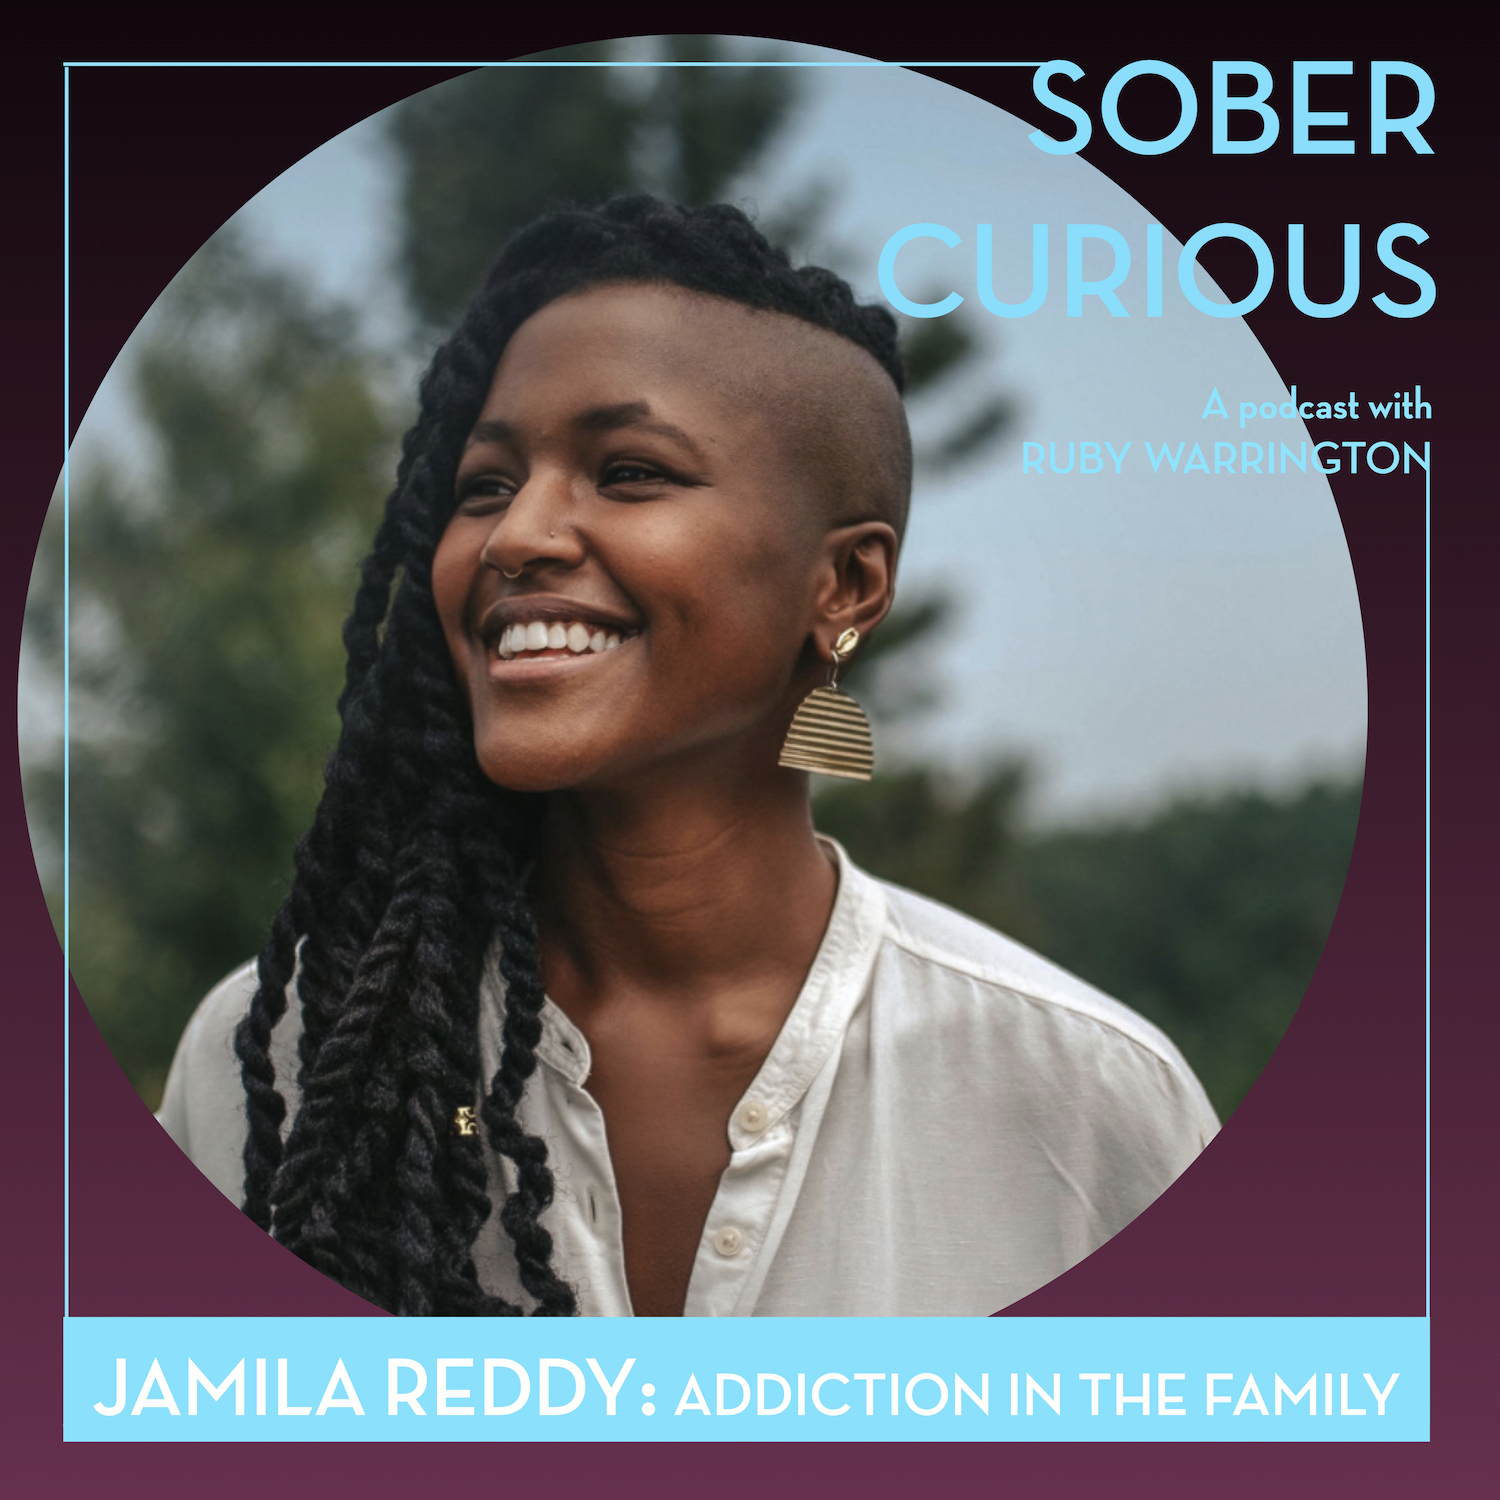 Jamila Reddy Sober Curious podcast addiction grief ruby warrington